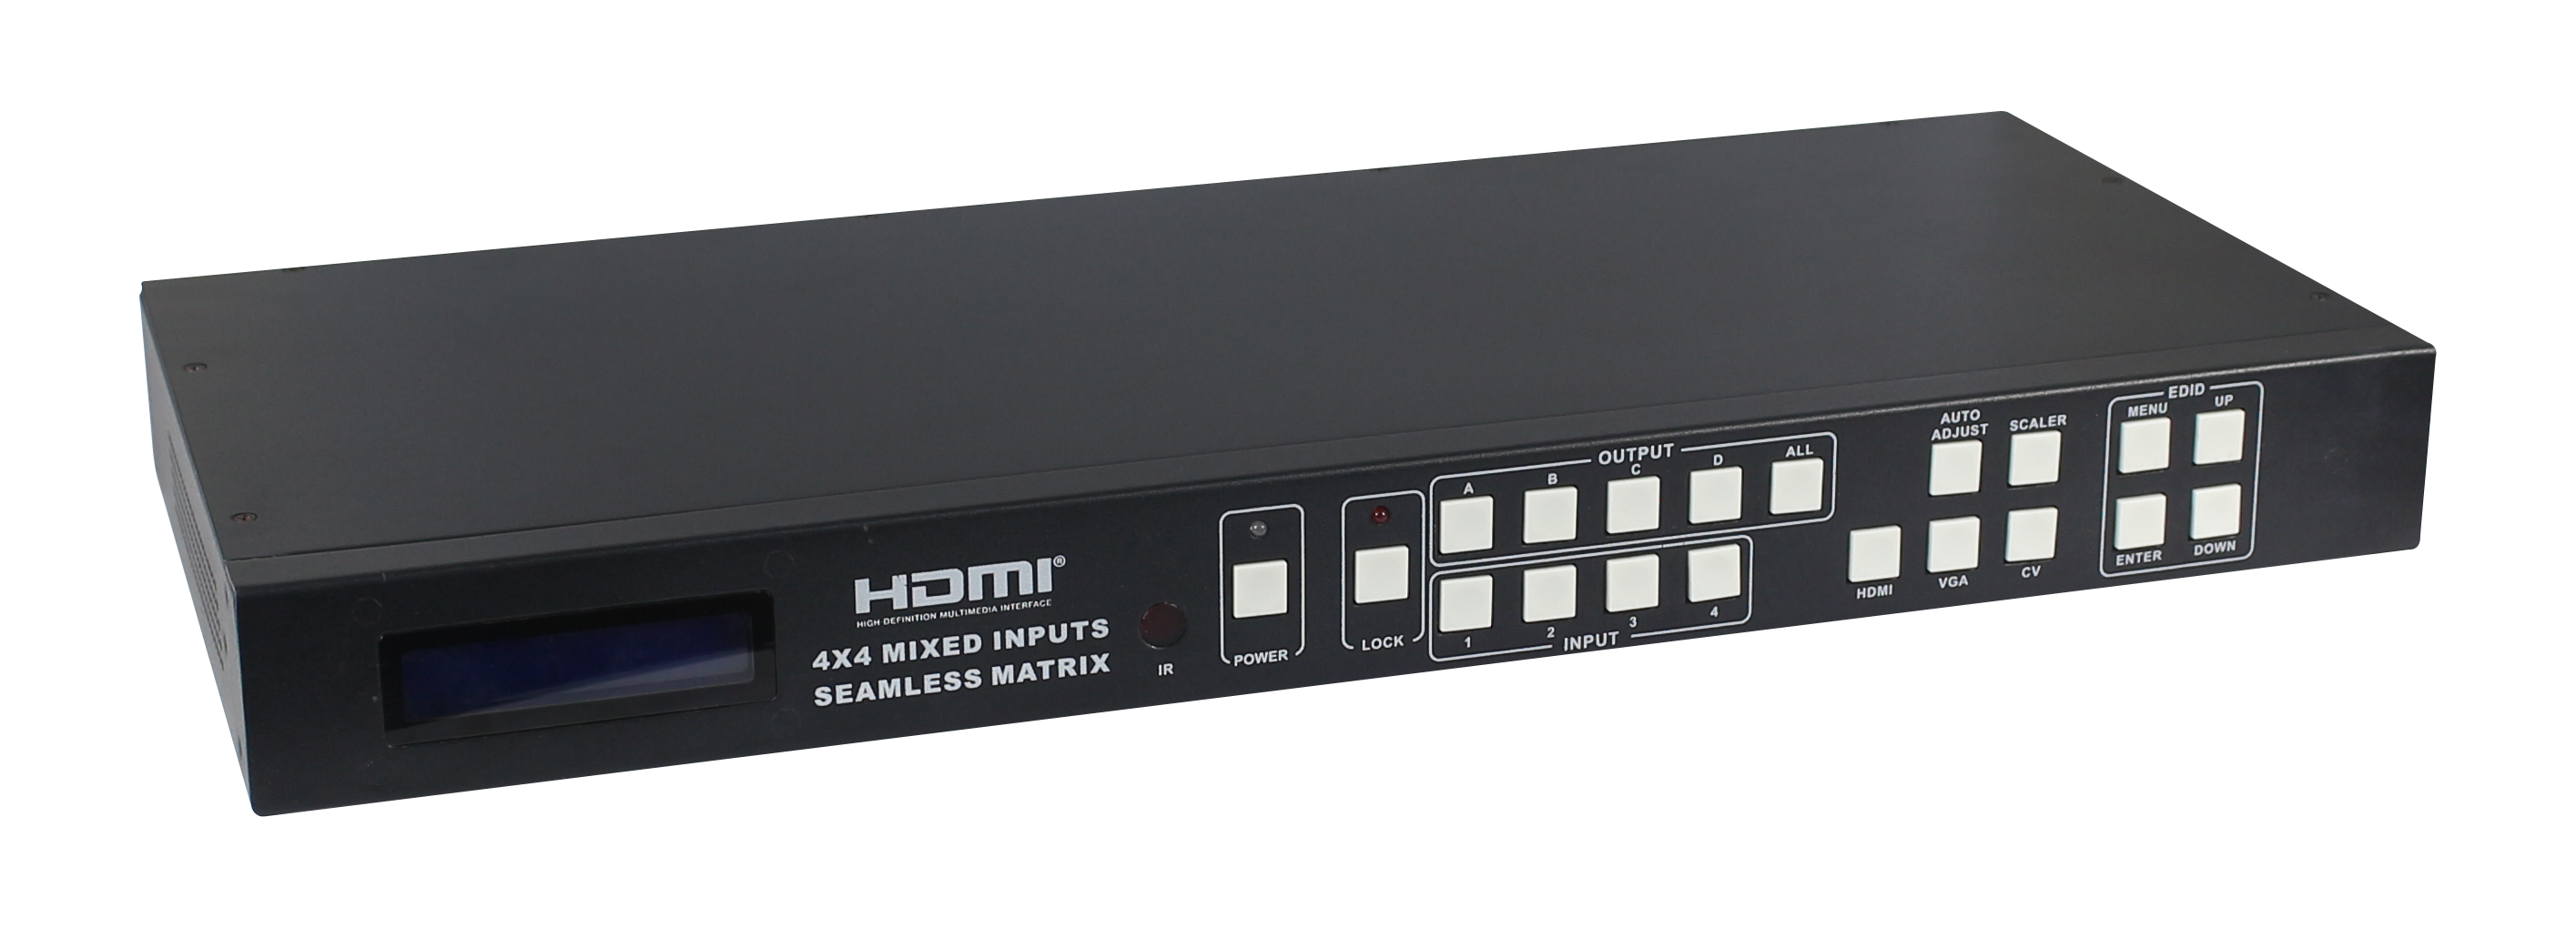 供应HDMI无缝切换矩阵厂家，HDMI混合矩阵，HDMI画面分割器，HDMI画面拼接，大屏幕拼接，大屏幕分割图片